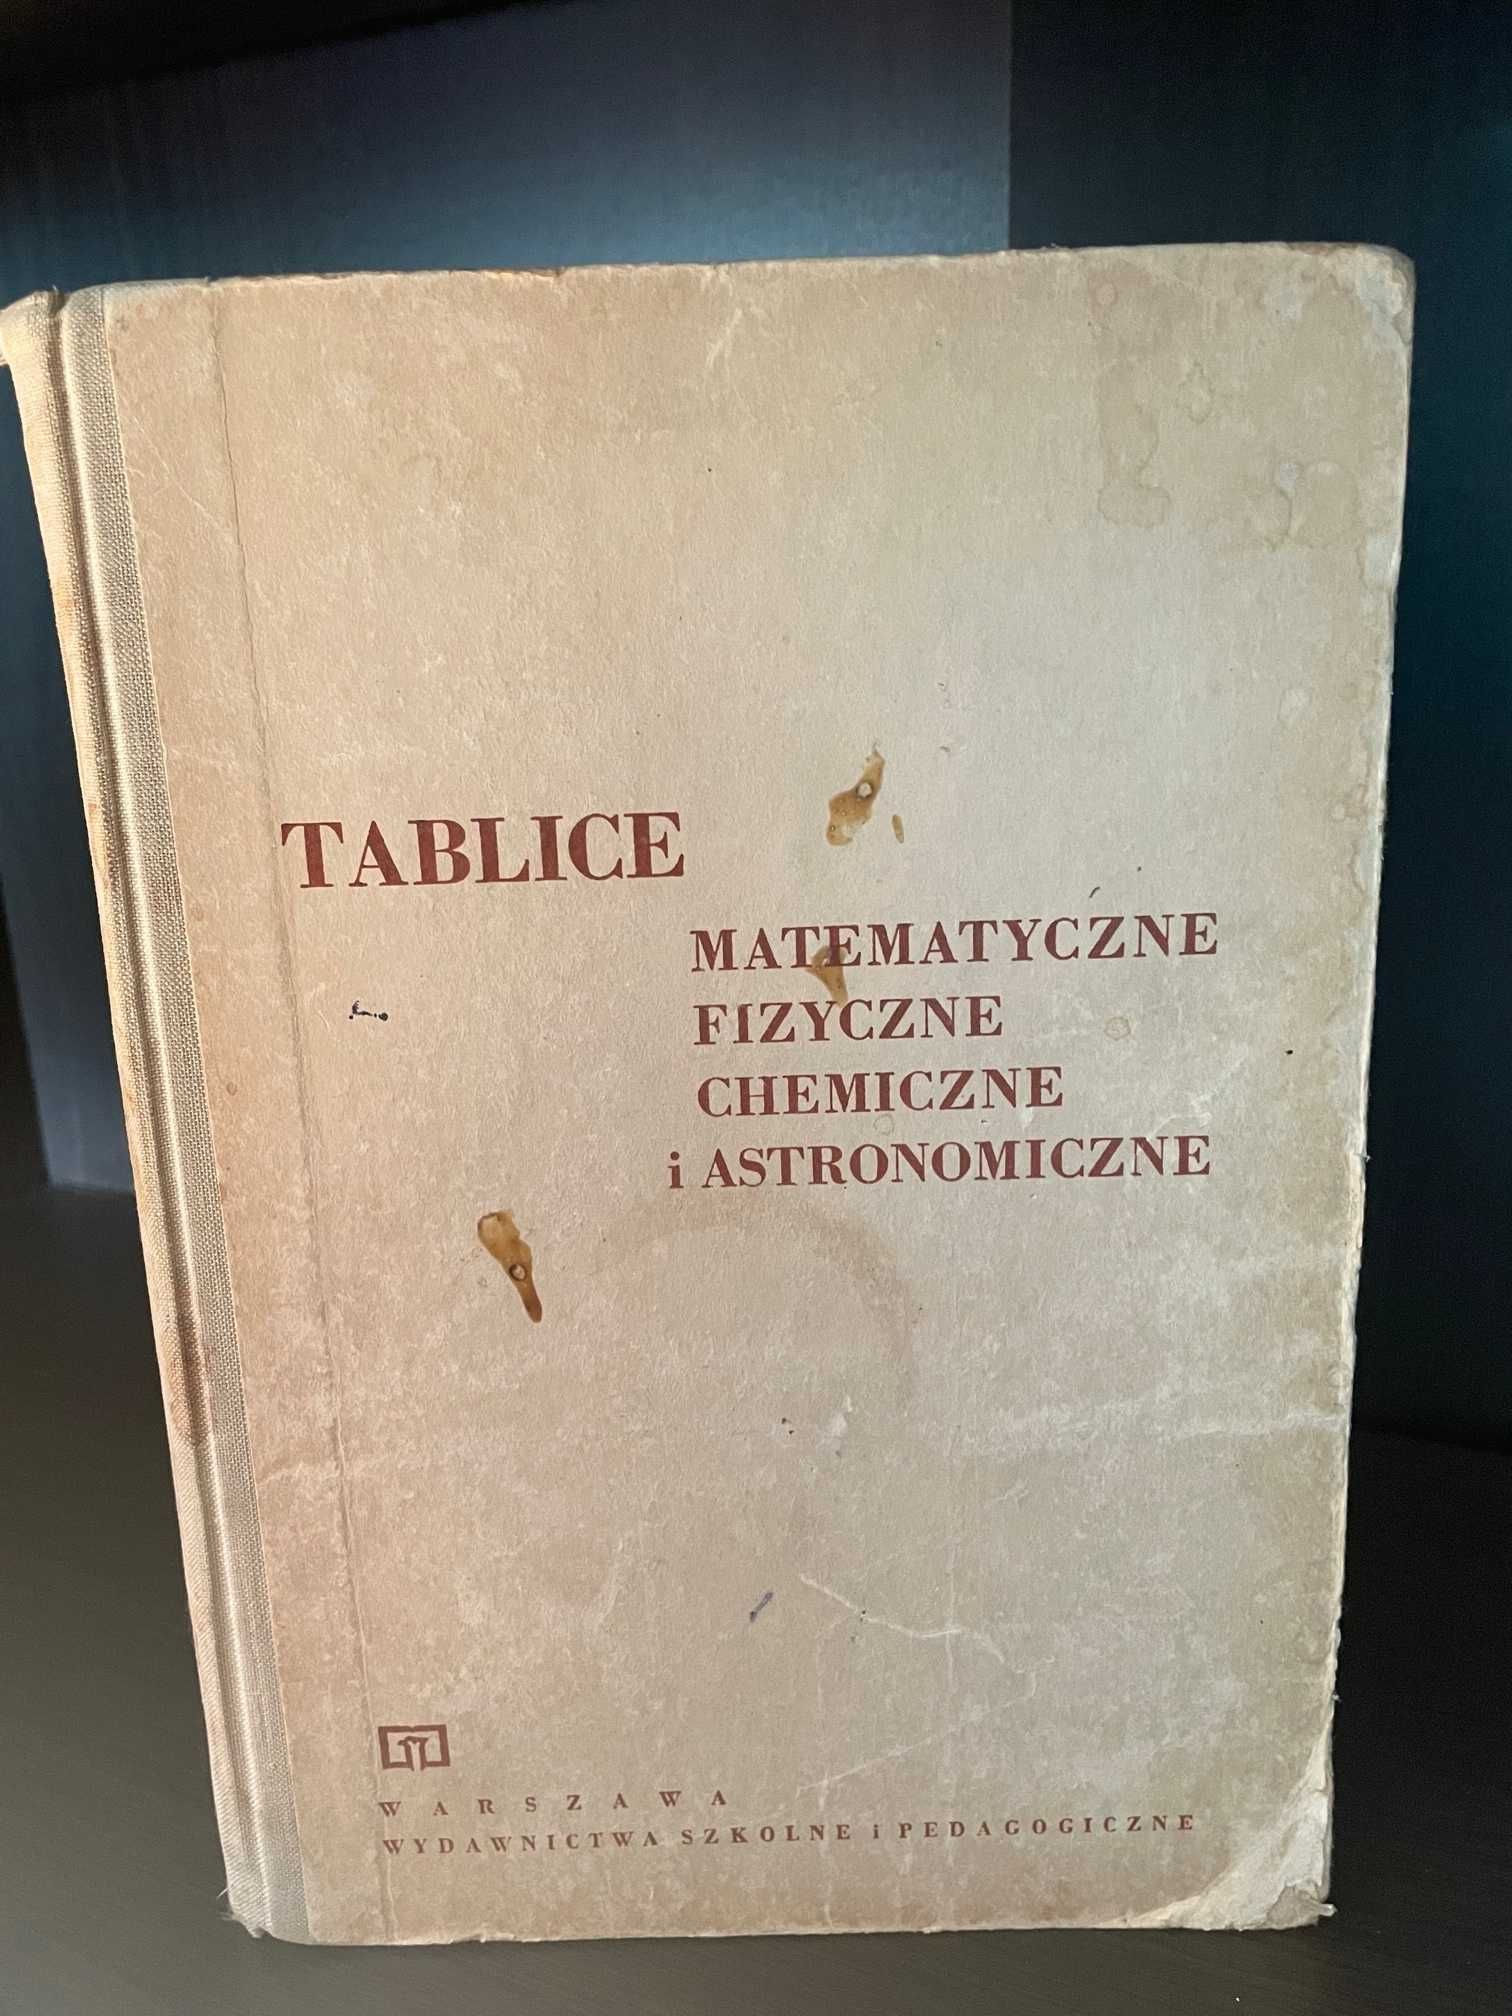 Tablice matematyczne, fizyczne, chemiczne i astronomiczne 1977